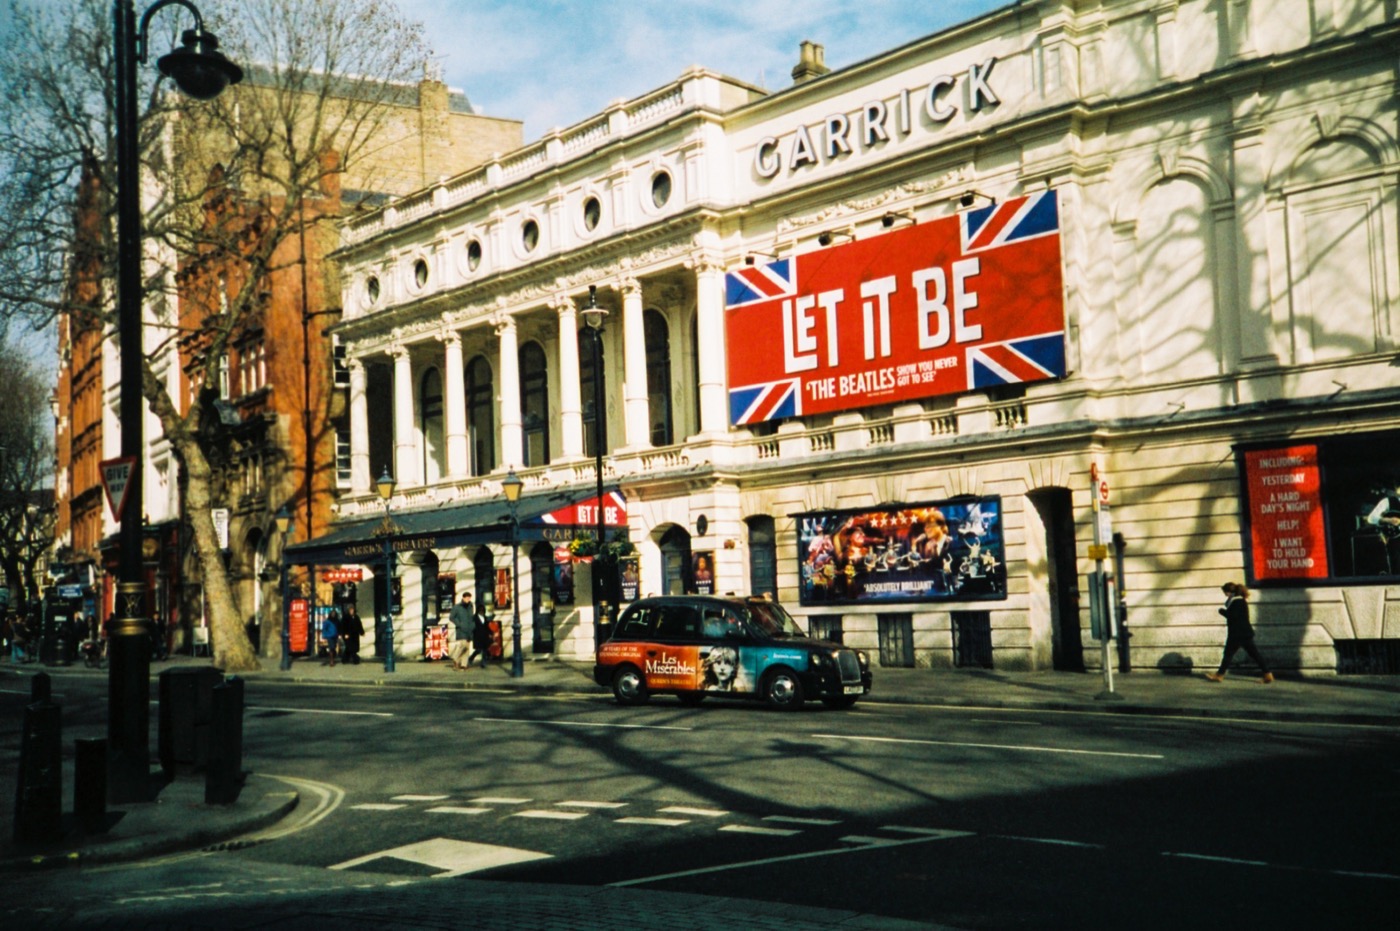 London - 35mm colour film